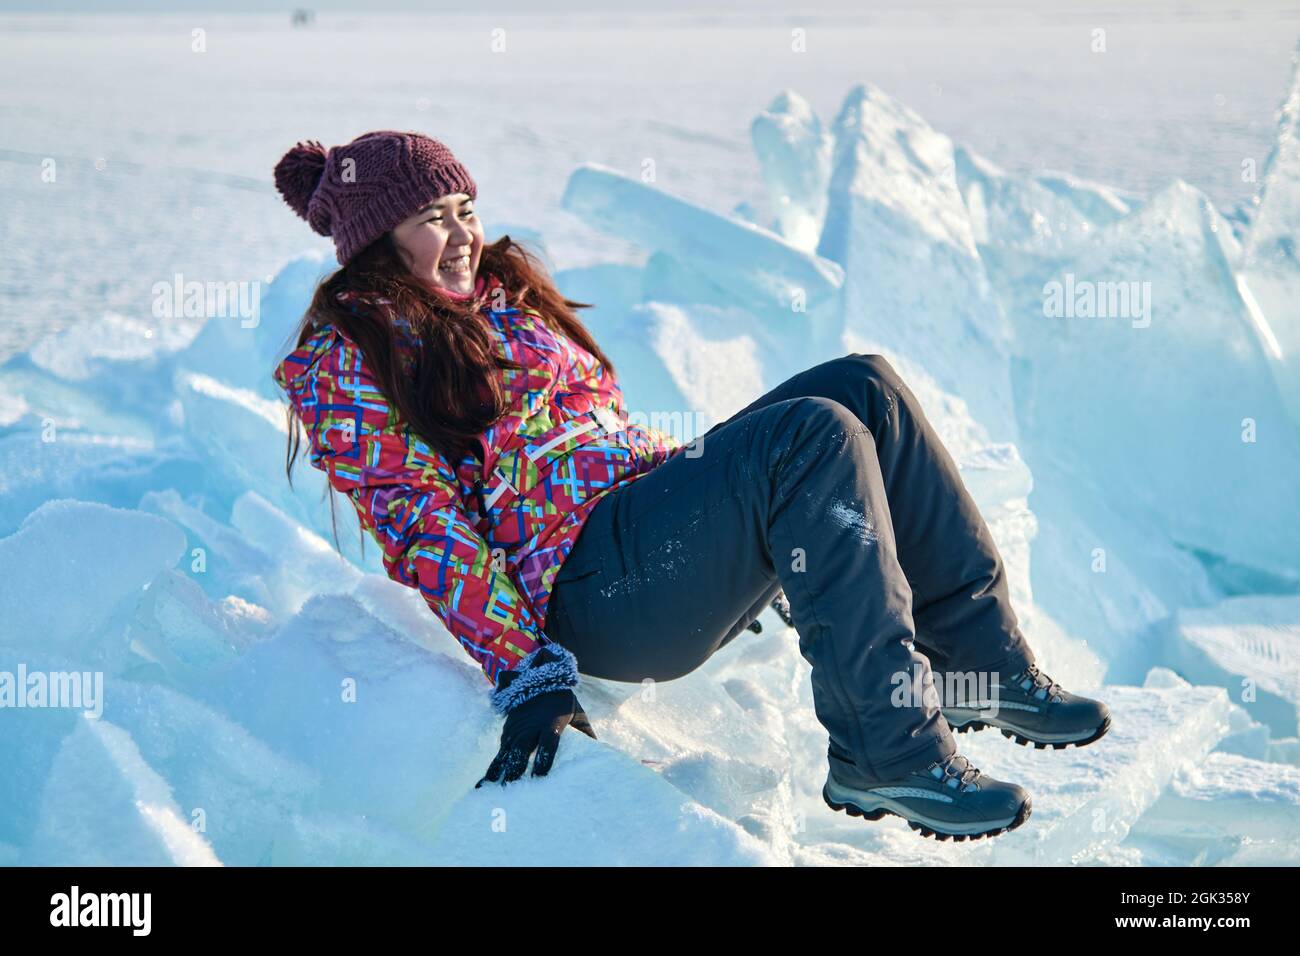 Une femme en costume de ski monte sur des blocs de glace, de plaisir, de plaisir, de repos, d'hiver Banque D'Images